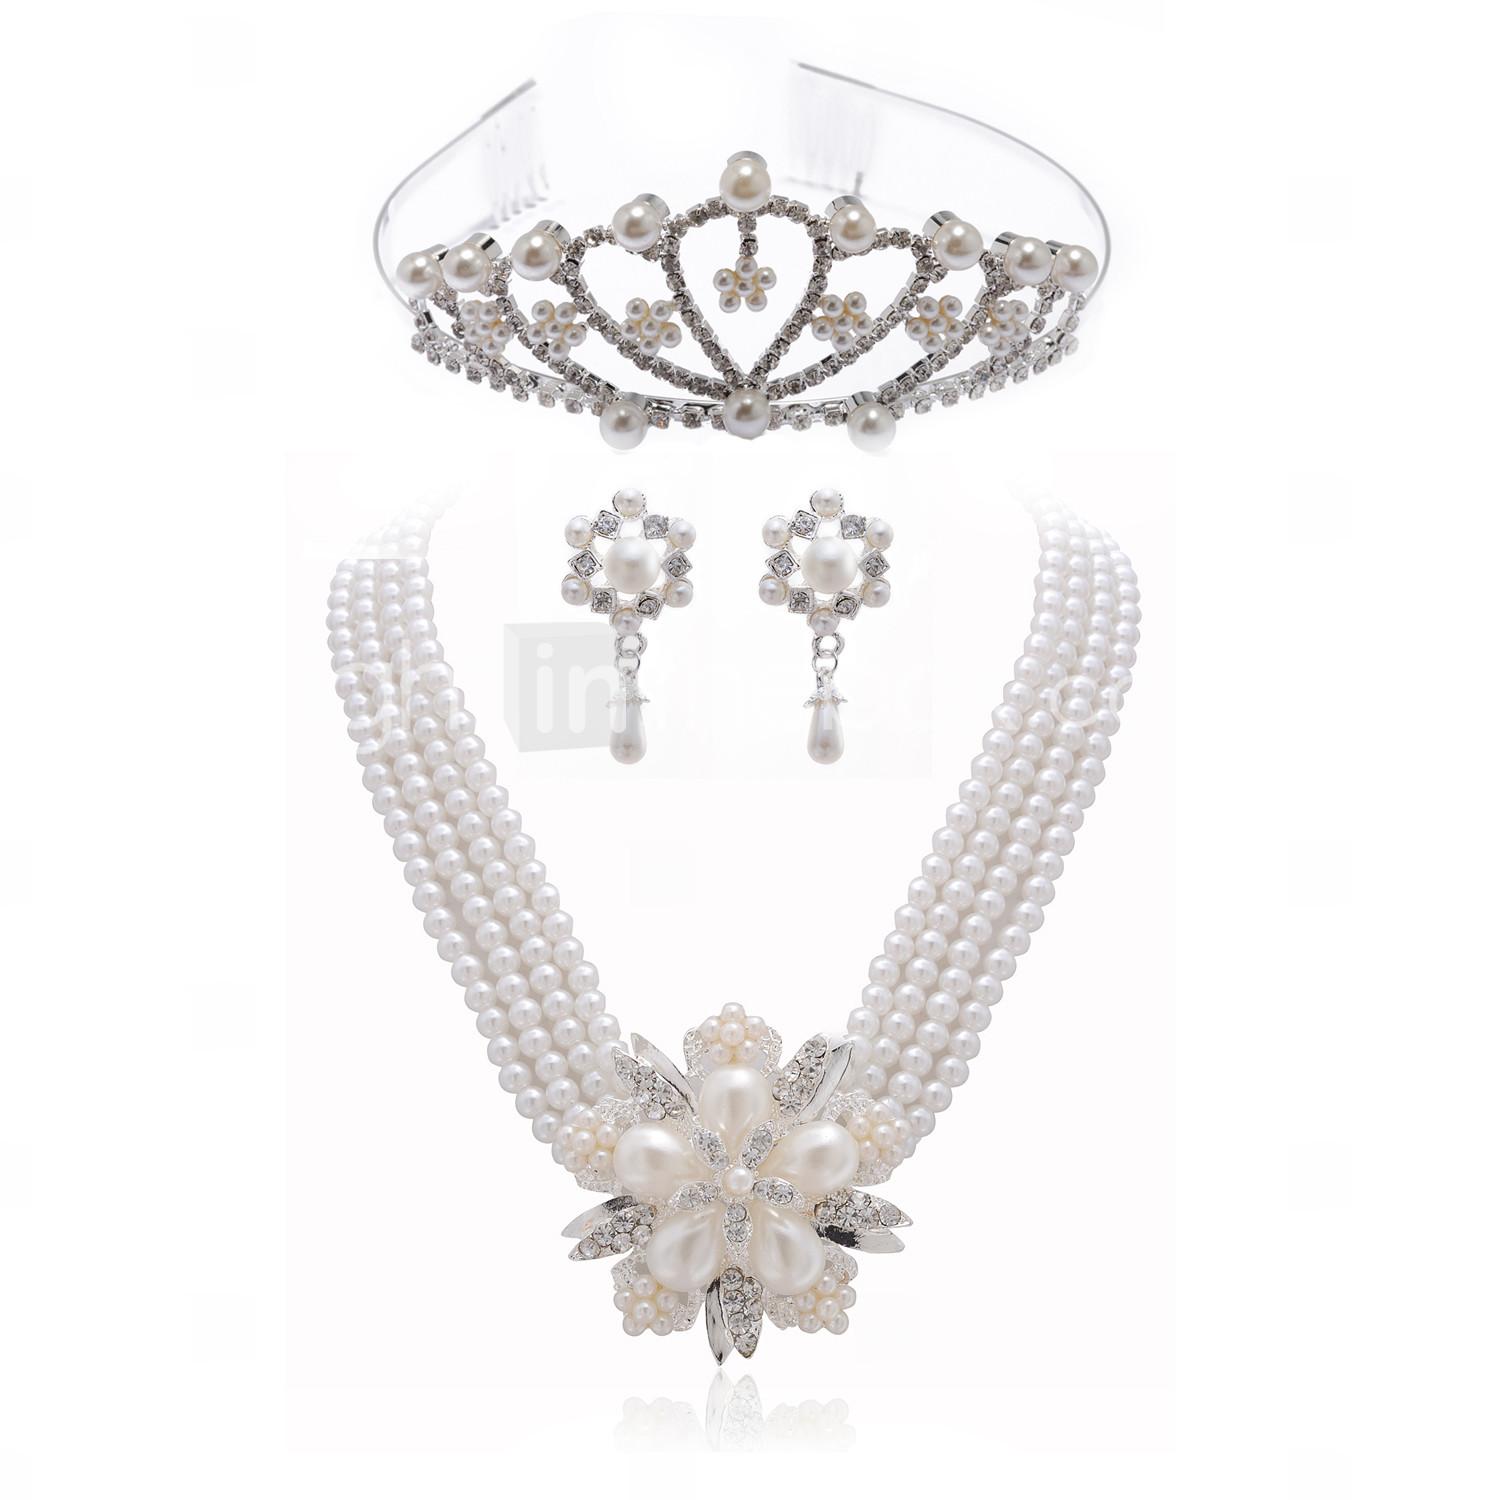 Foto magnífico cristales claros con el conjunto de joyas de imitación de perlas, incluyendo collares, aretes y diadema foto 750211